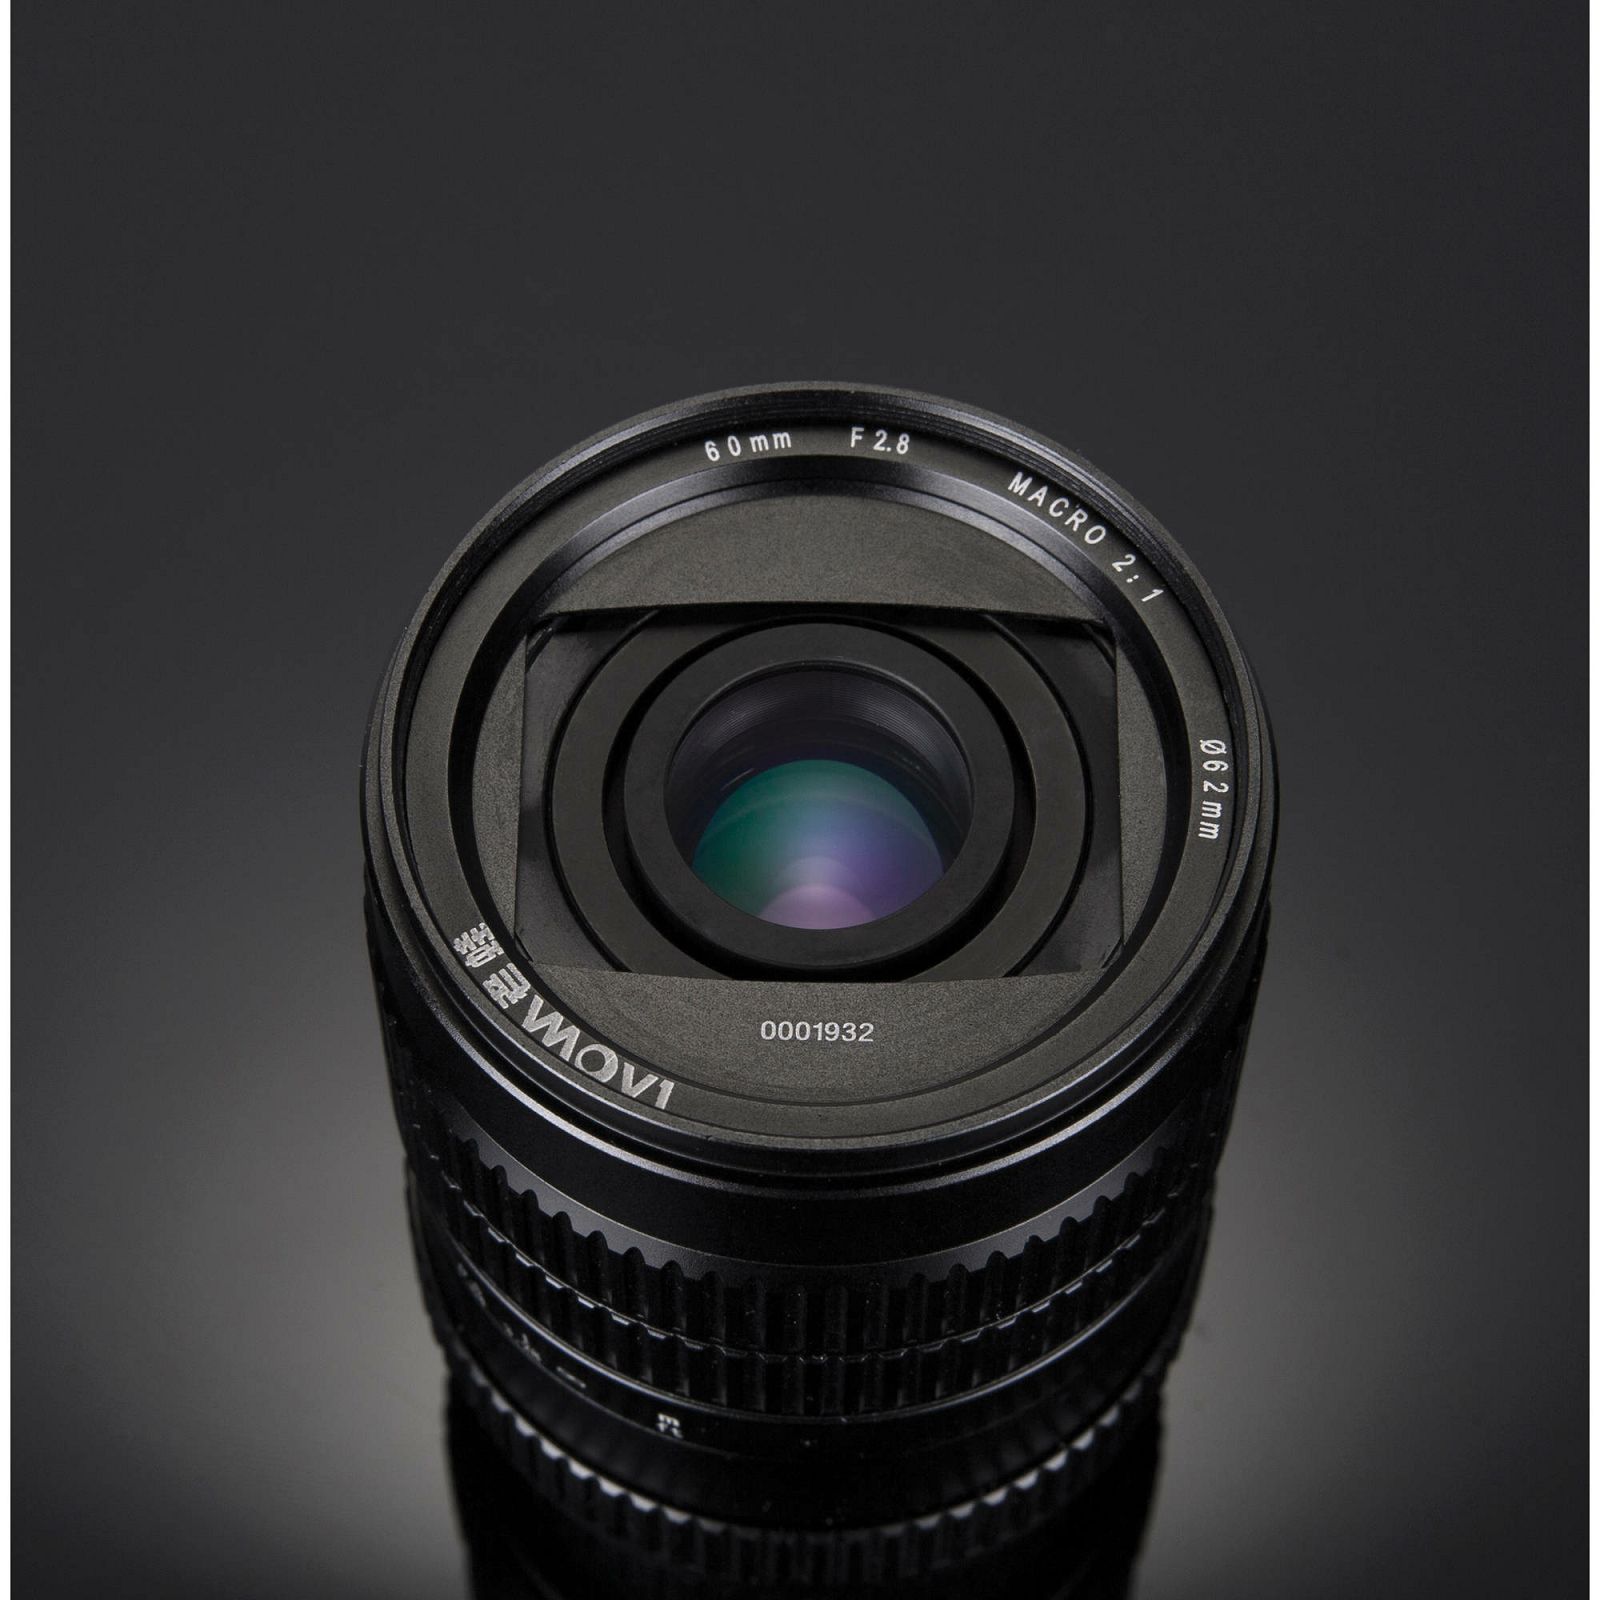 Venus Optics Laowa 60mm f/2.8 2:1 2x Ultra Macro objektiv za Sony A-mount